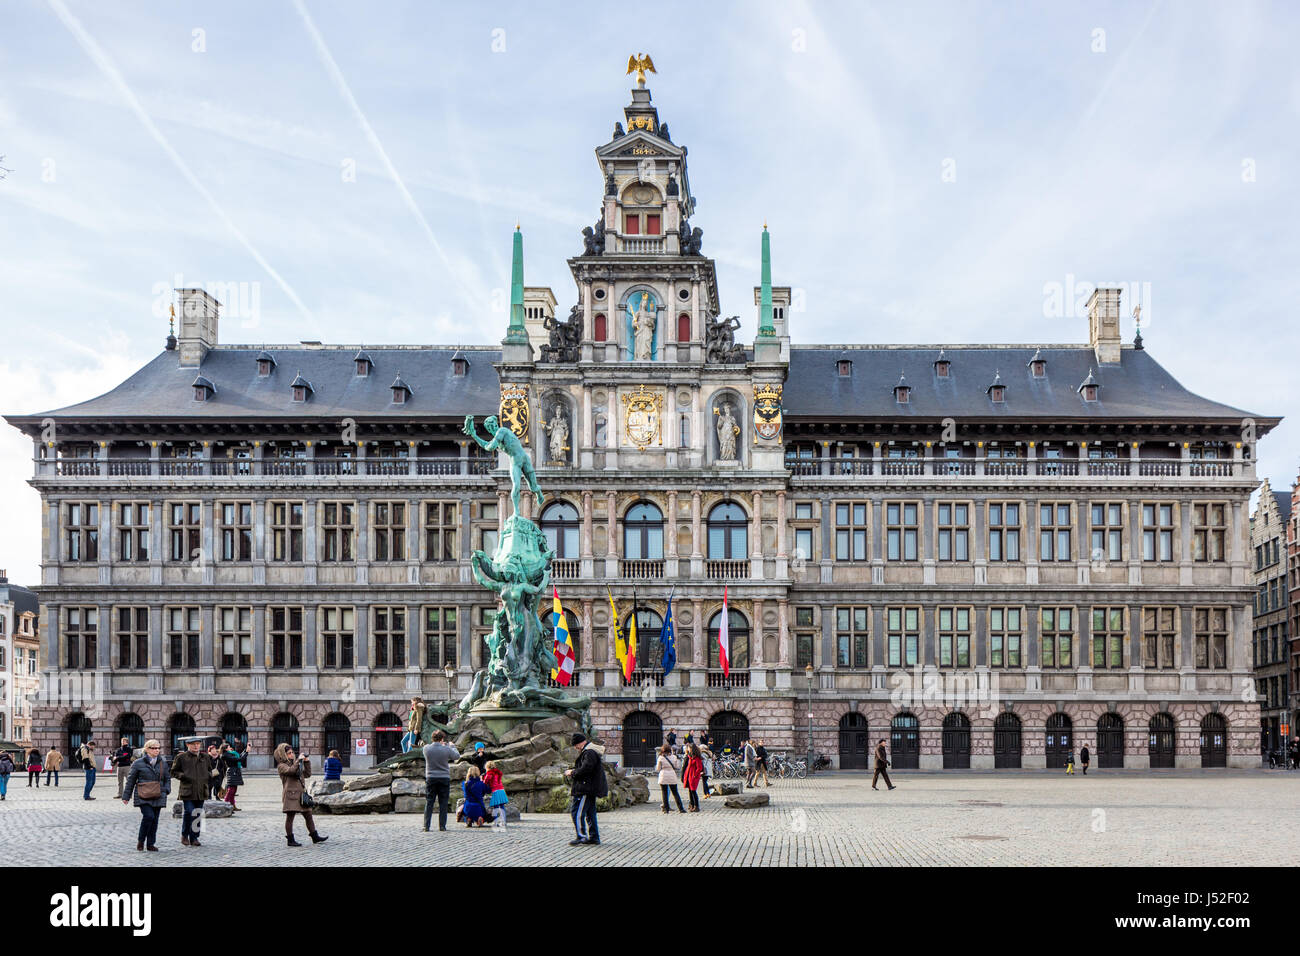 City hall, Grote markt, Antwerpen, Belgium Stock Photo